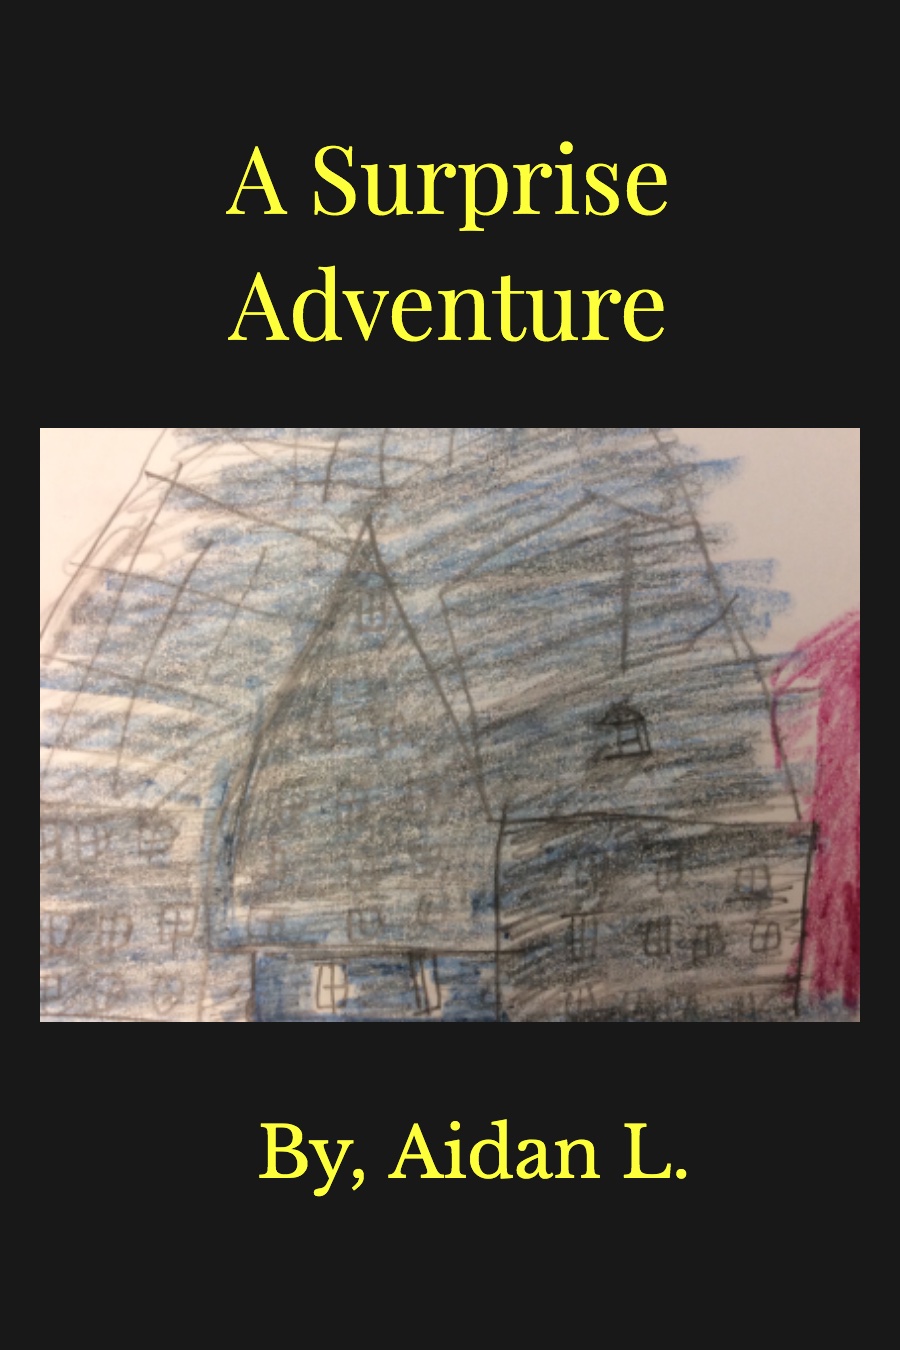 A Surprise Adventure by Aidan L